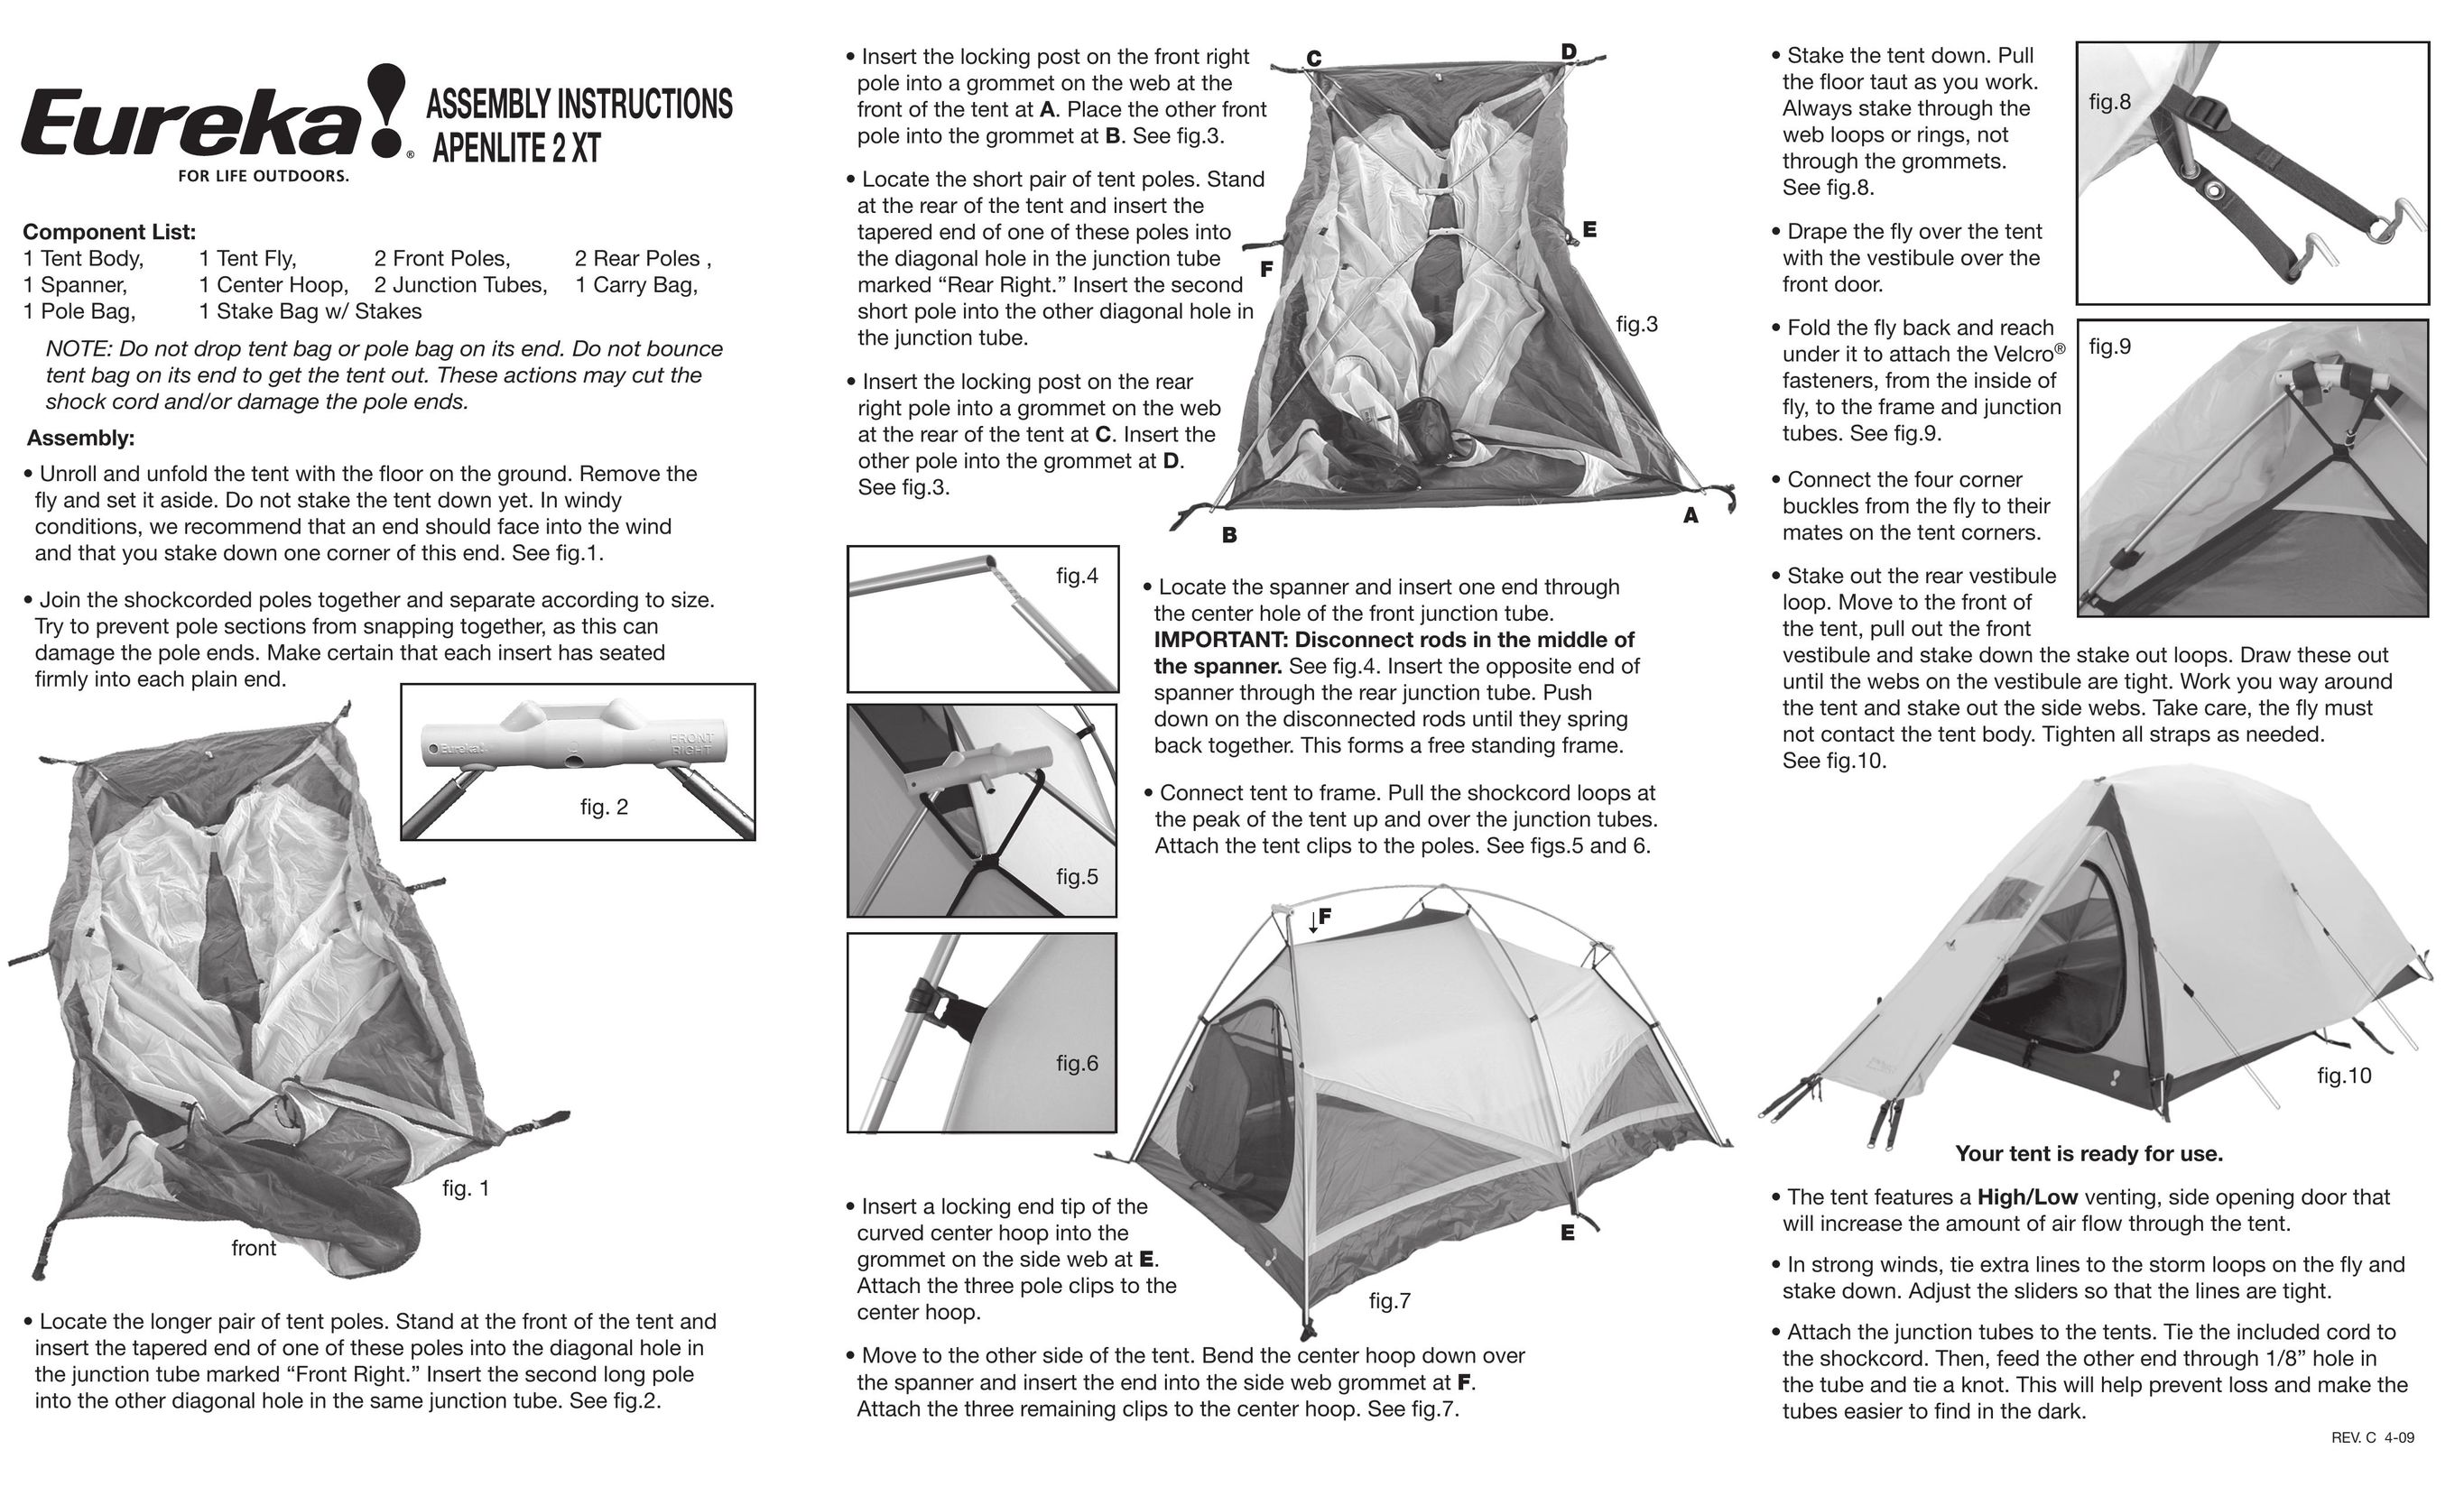 Eureka! Tents alpenlite 2XT Tent User Manual